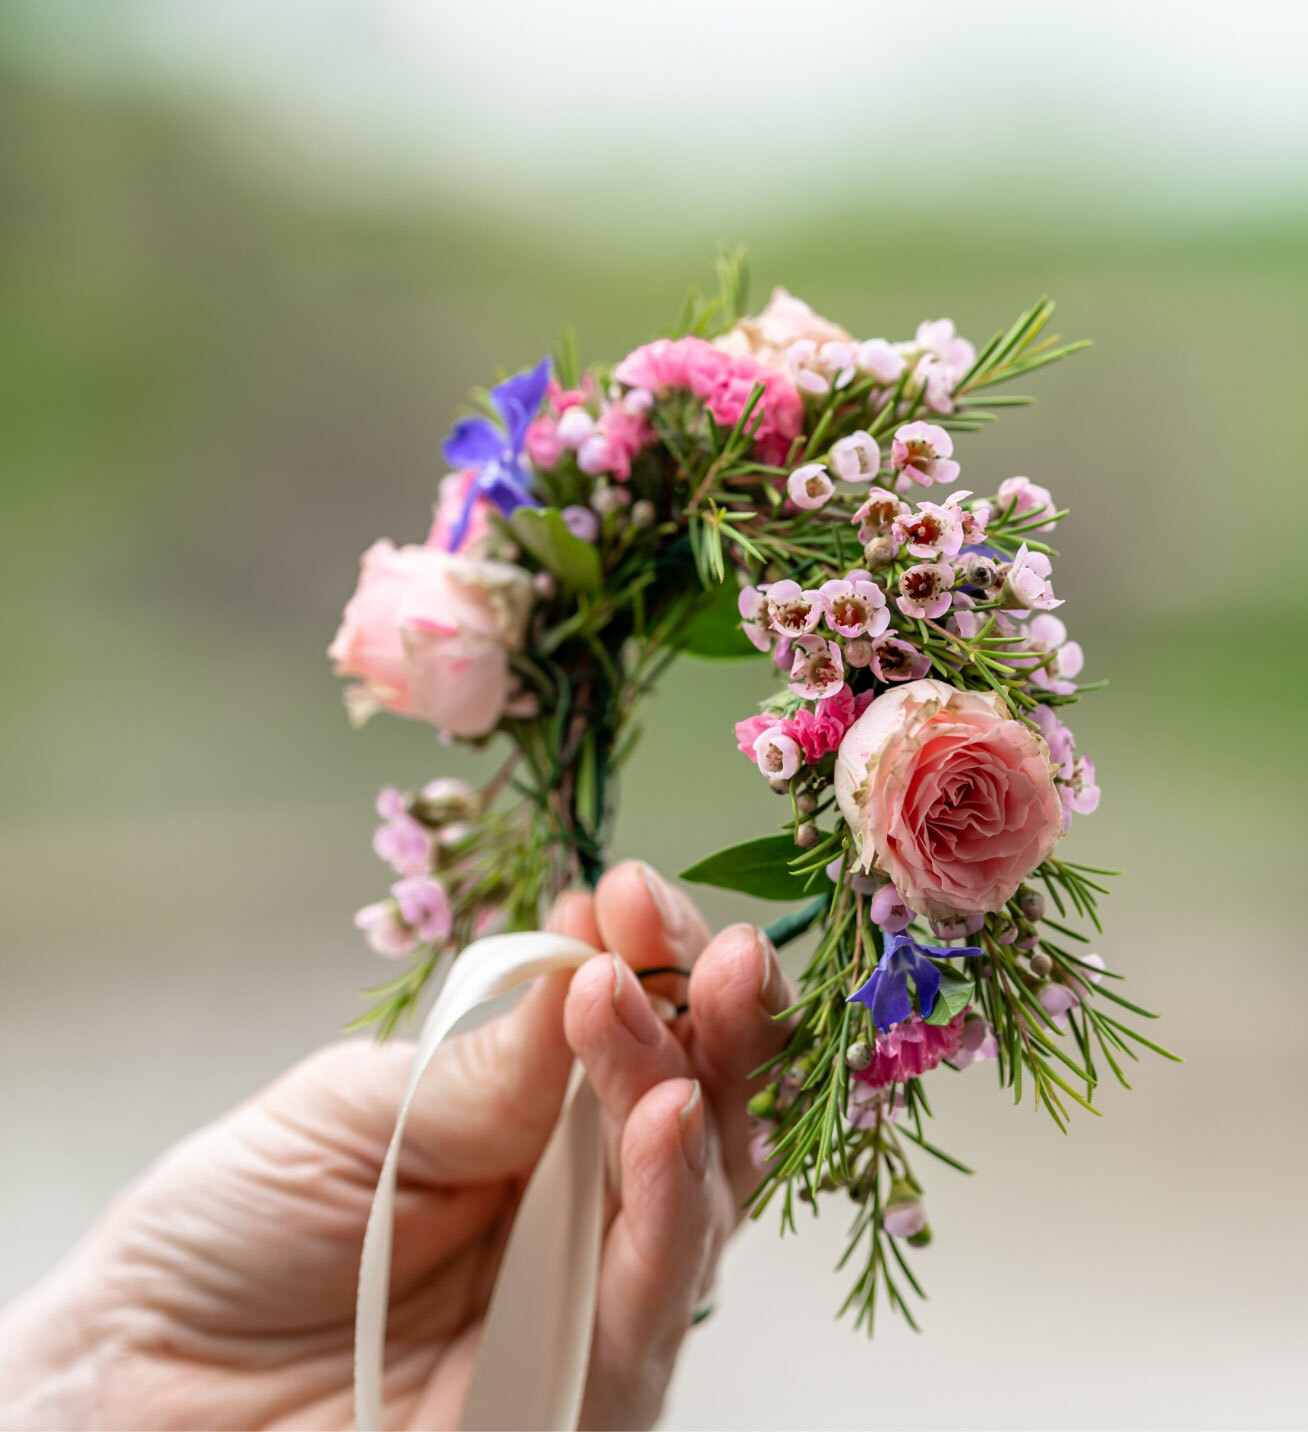 Blumen-Risse, Sortiment, Blumen, Floristik, Hochzeit, Rosa, Lila, Weiss, Gruen